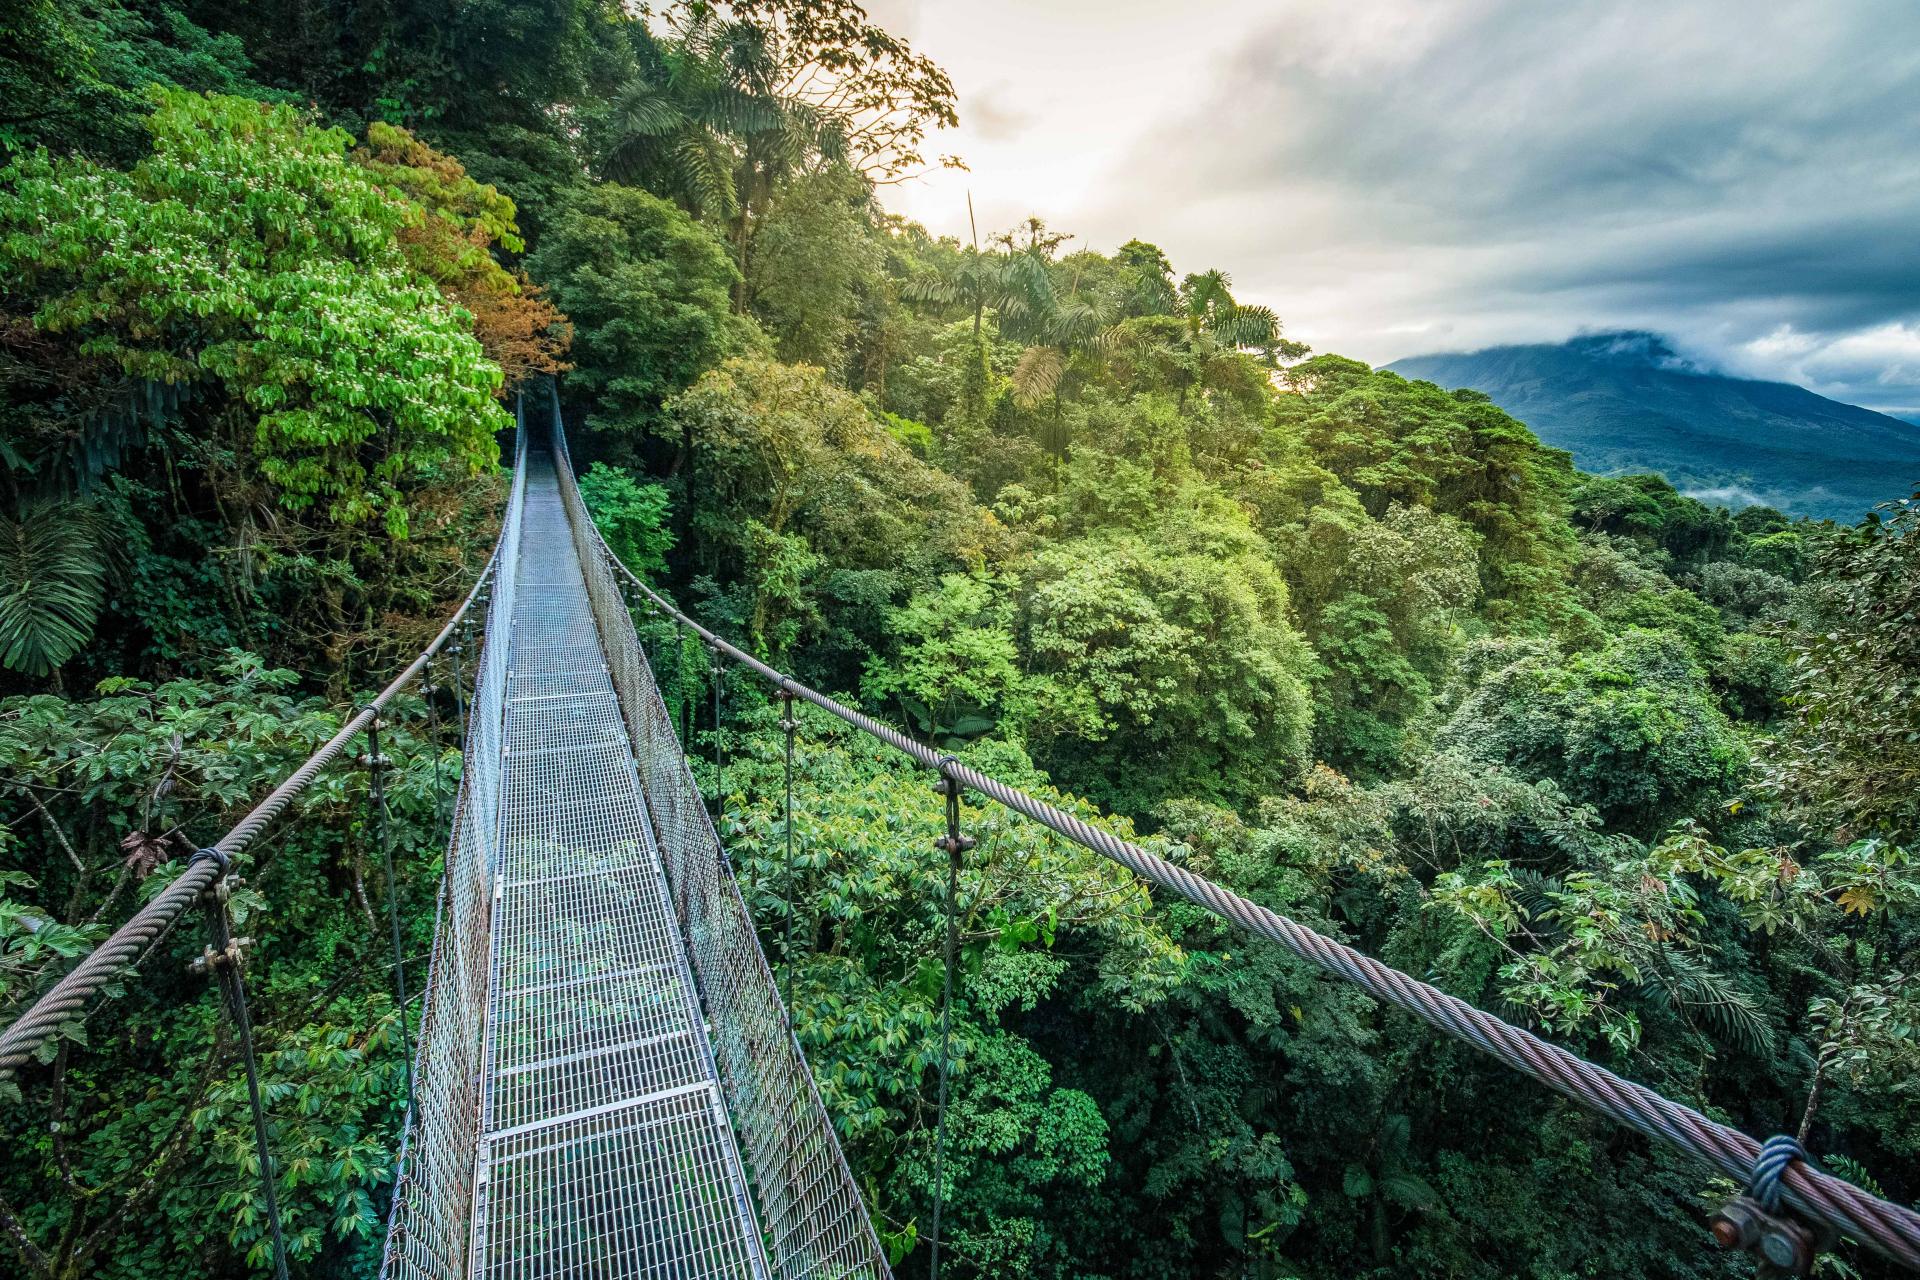 Reisen Sie mit uns in das Paradies Costa Rica und erleben Sie den Regenwald von oben